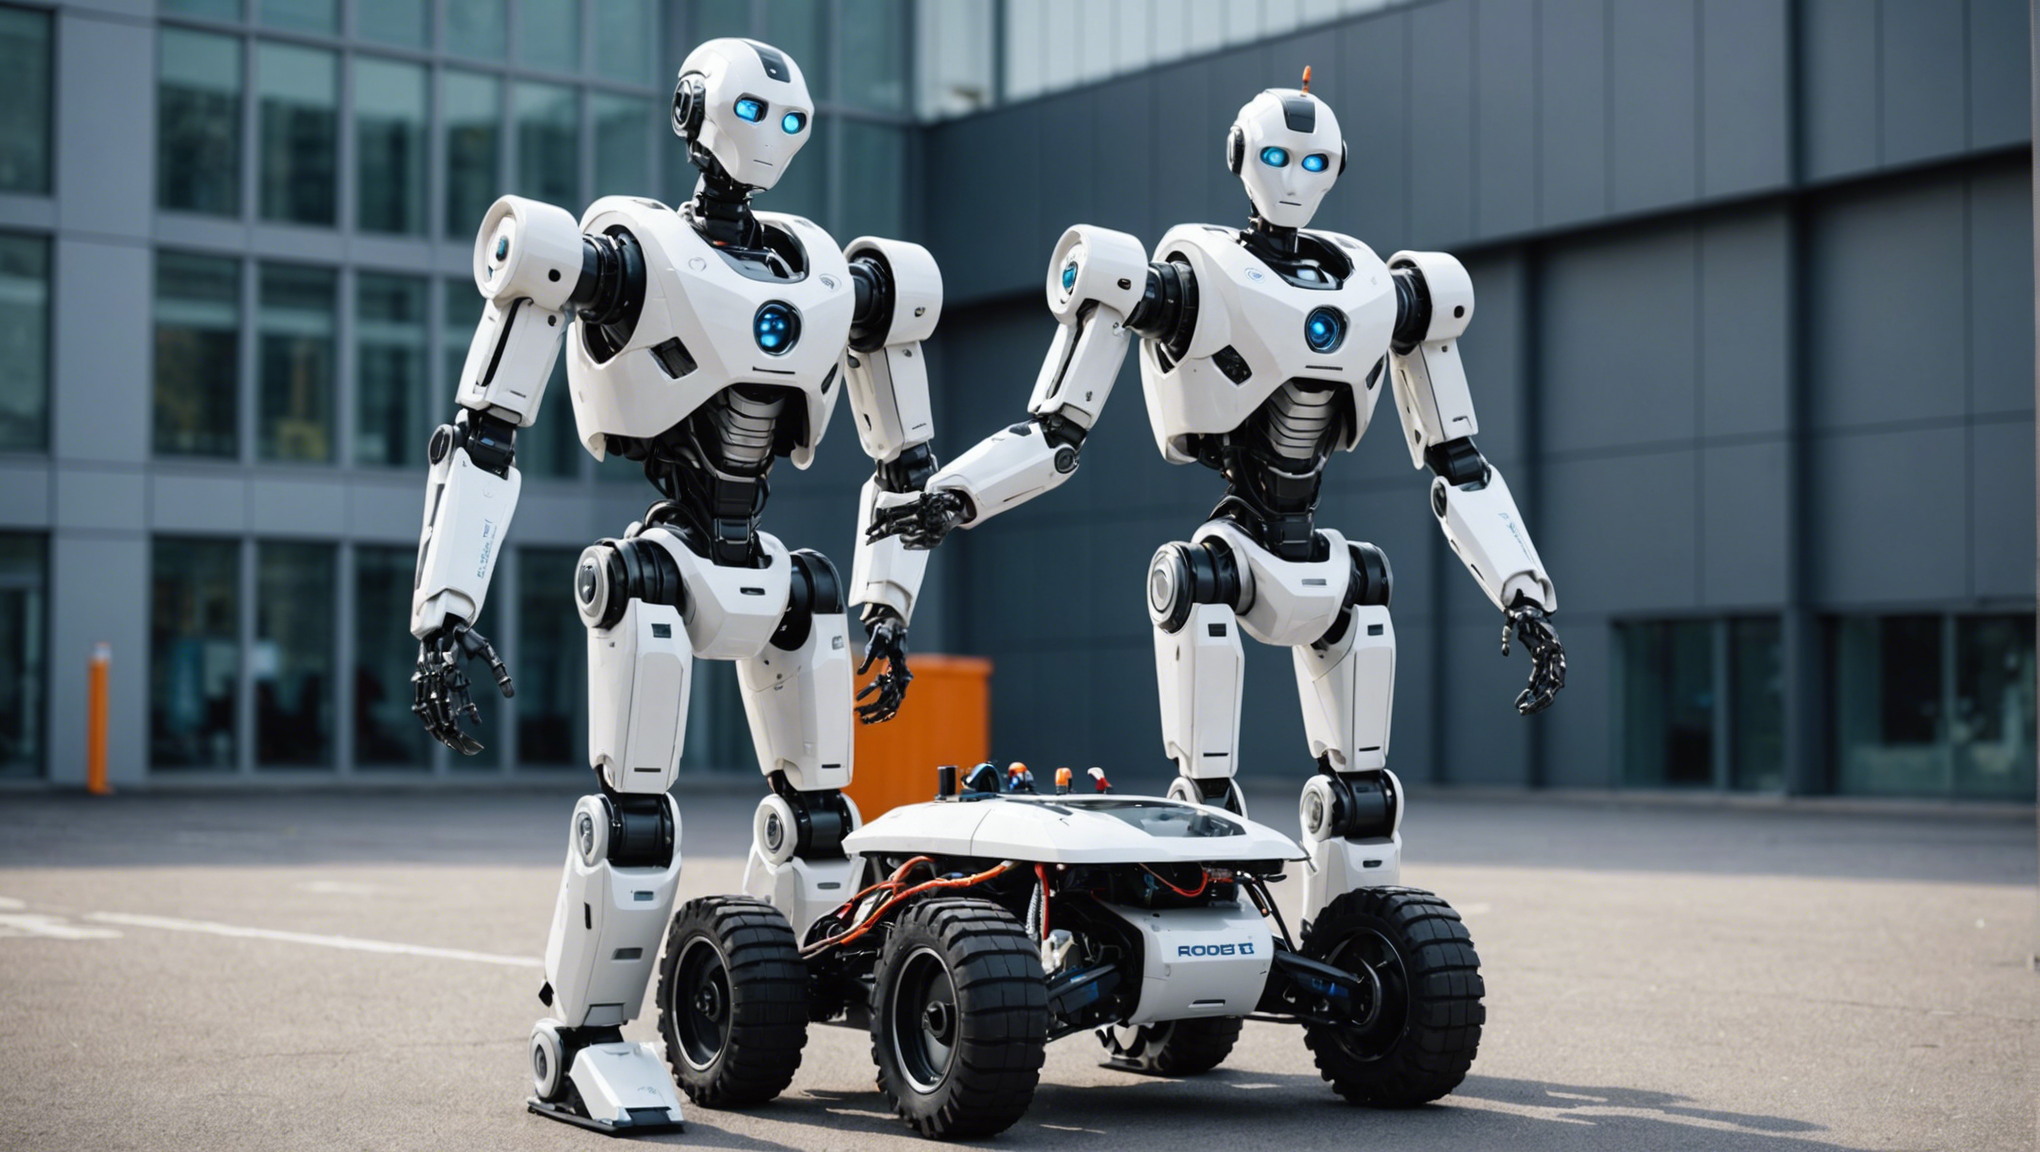 découvrez le blog de génération robots : des articles sur la robotique pour les professionnels, l'éducation, la recherche et les passionnés.